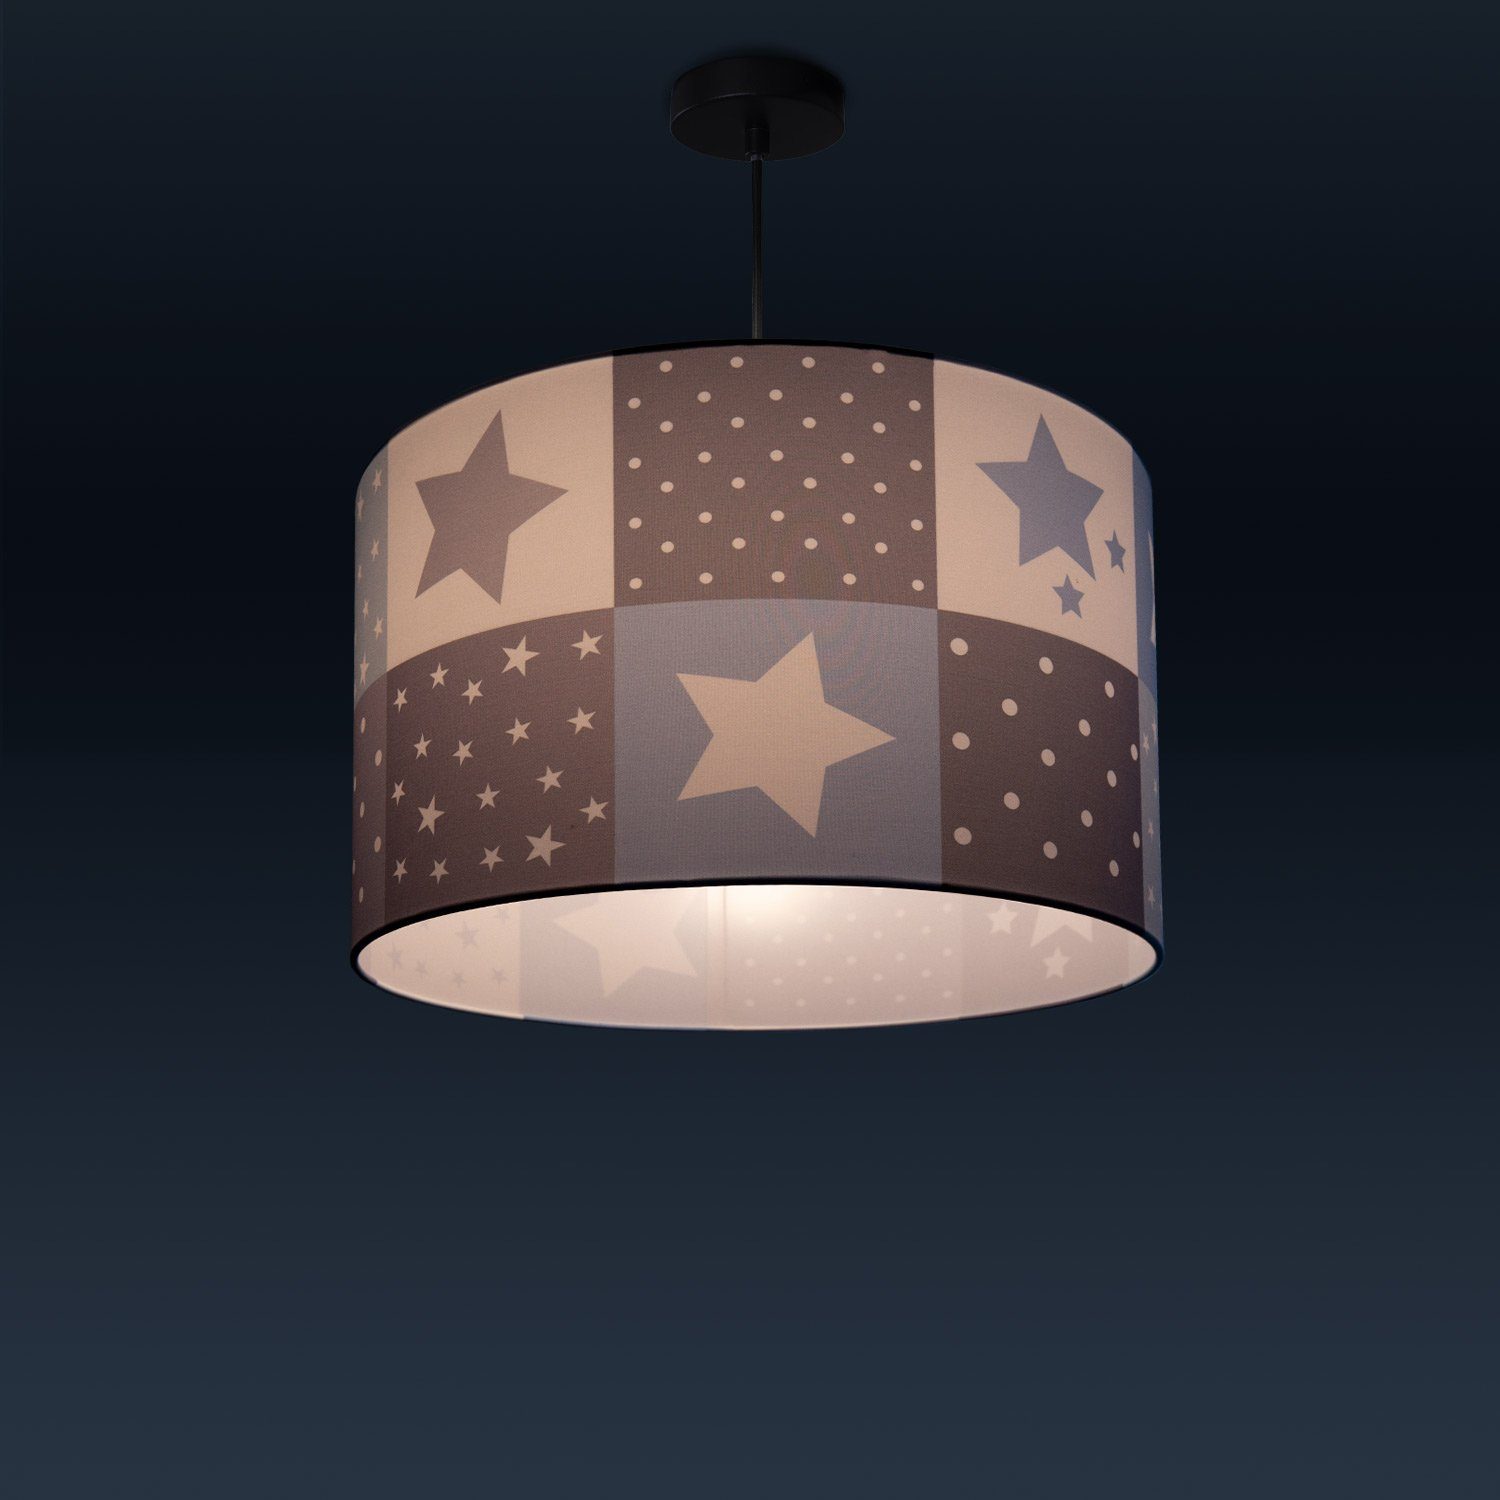 Sternen Lampe Cosmo LED Deckenlampe Home Pendelleuchte Leuchtmittel, Motiv Paco E27 345, ohne Kinderzimmer Kinderlampe